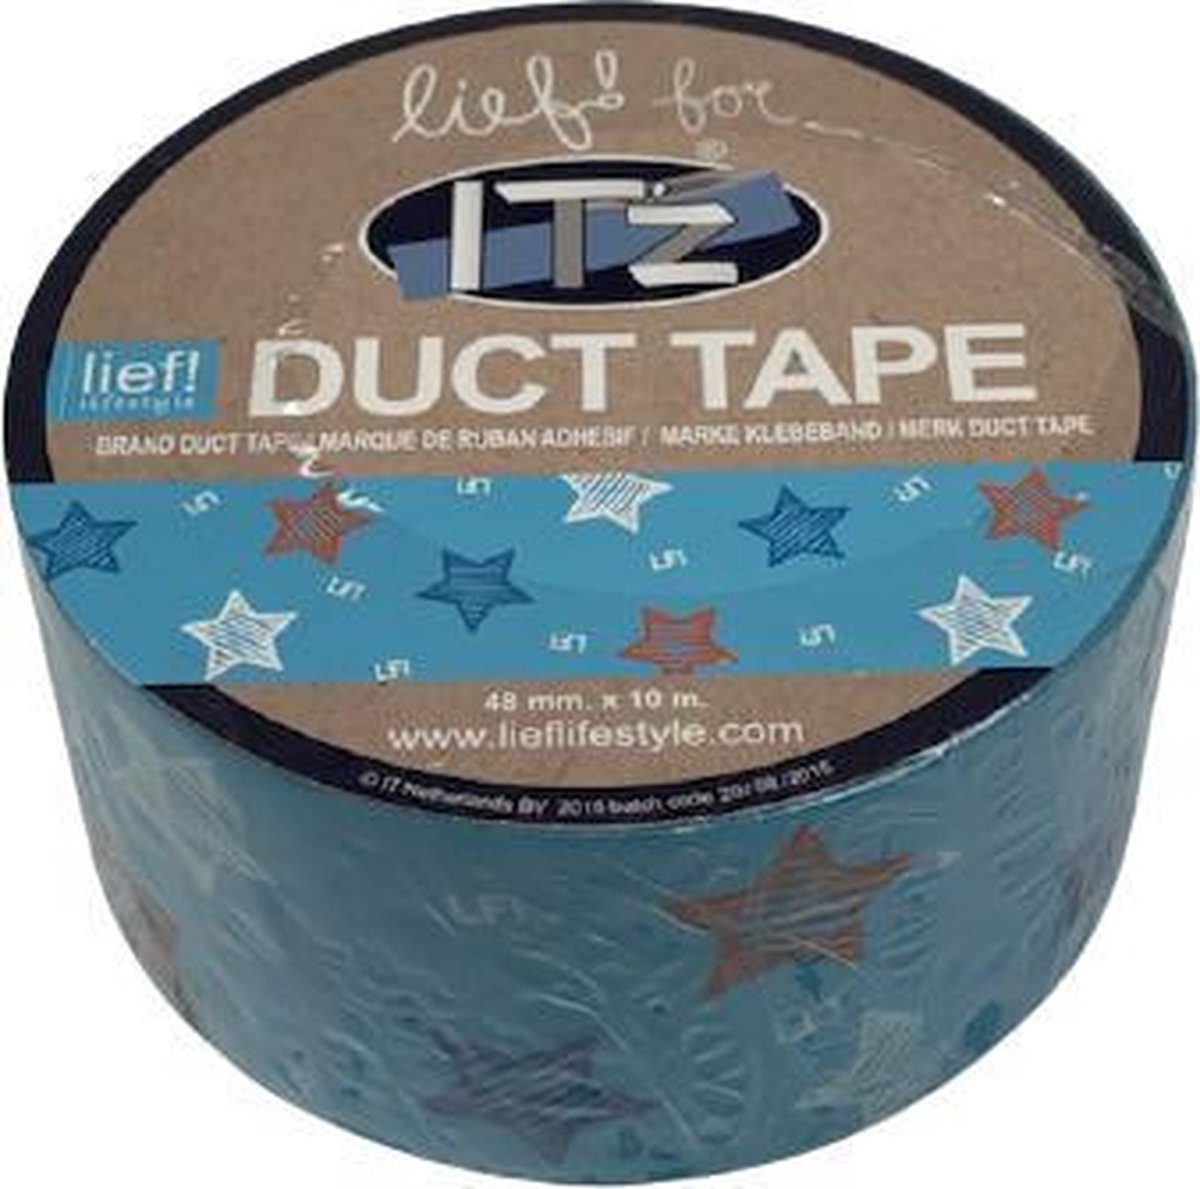 ik heb honger Slovenië Voorganger IT'z Duct Tape 46- Lief Blauwe Ster 3 stuks 48 mm x 10m | tape - plakband  -... | bol.com